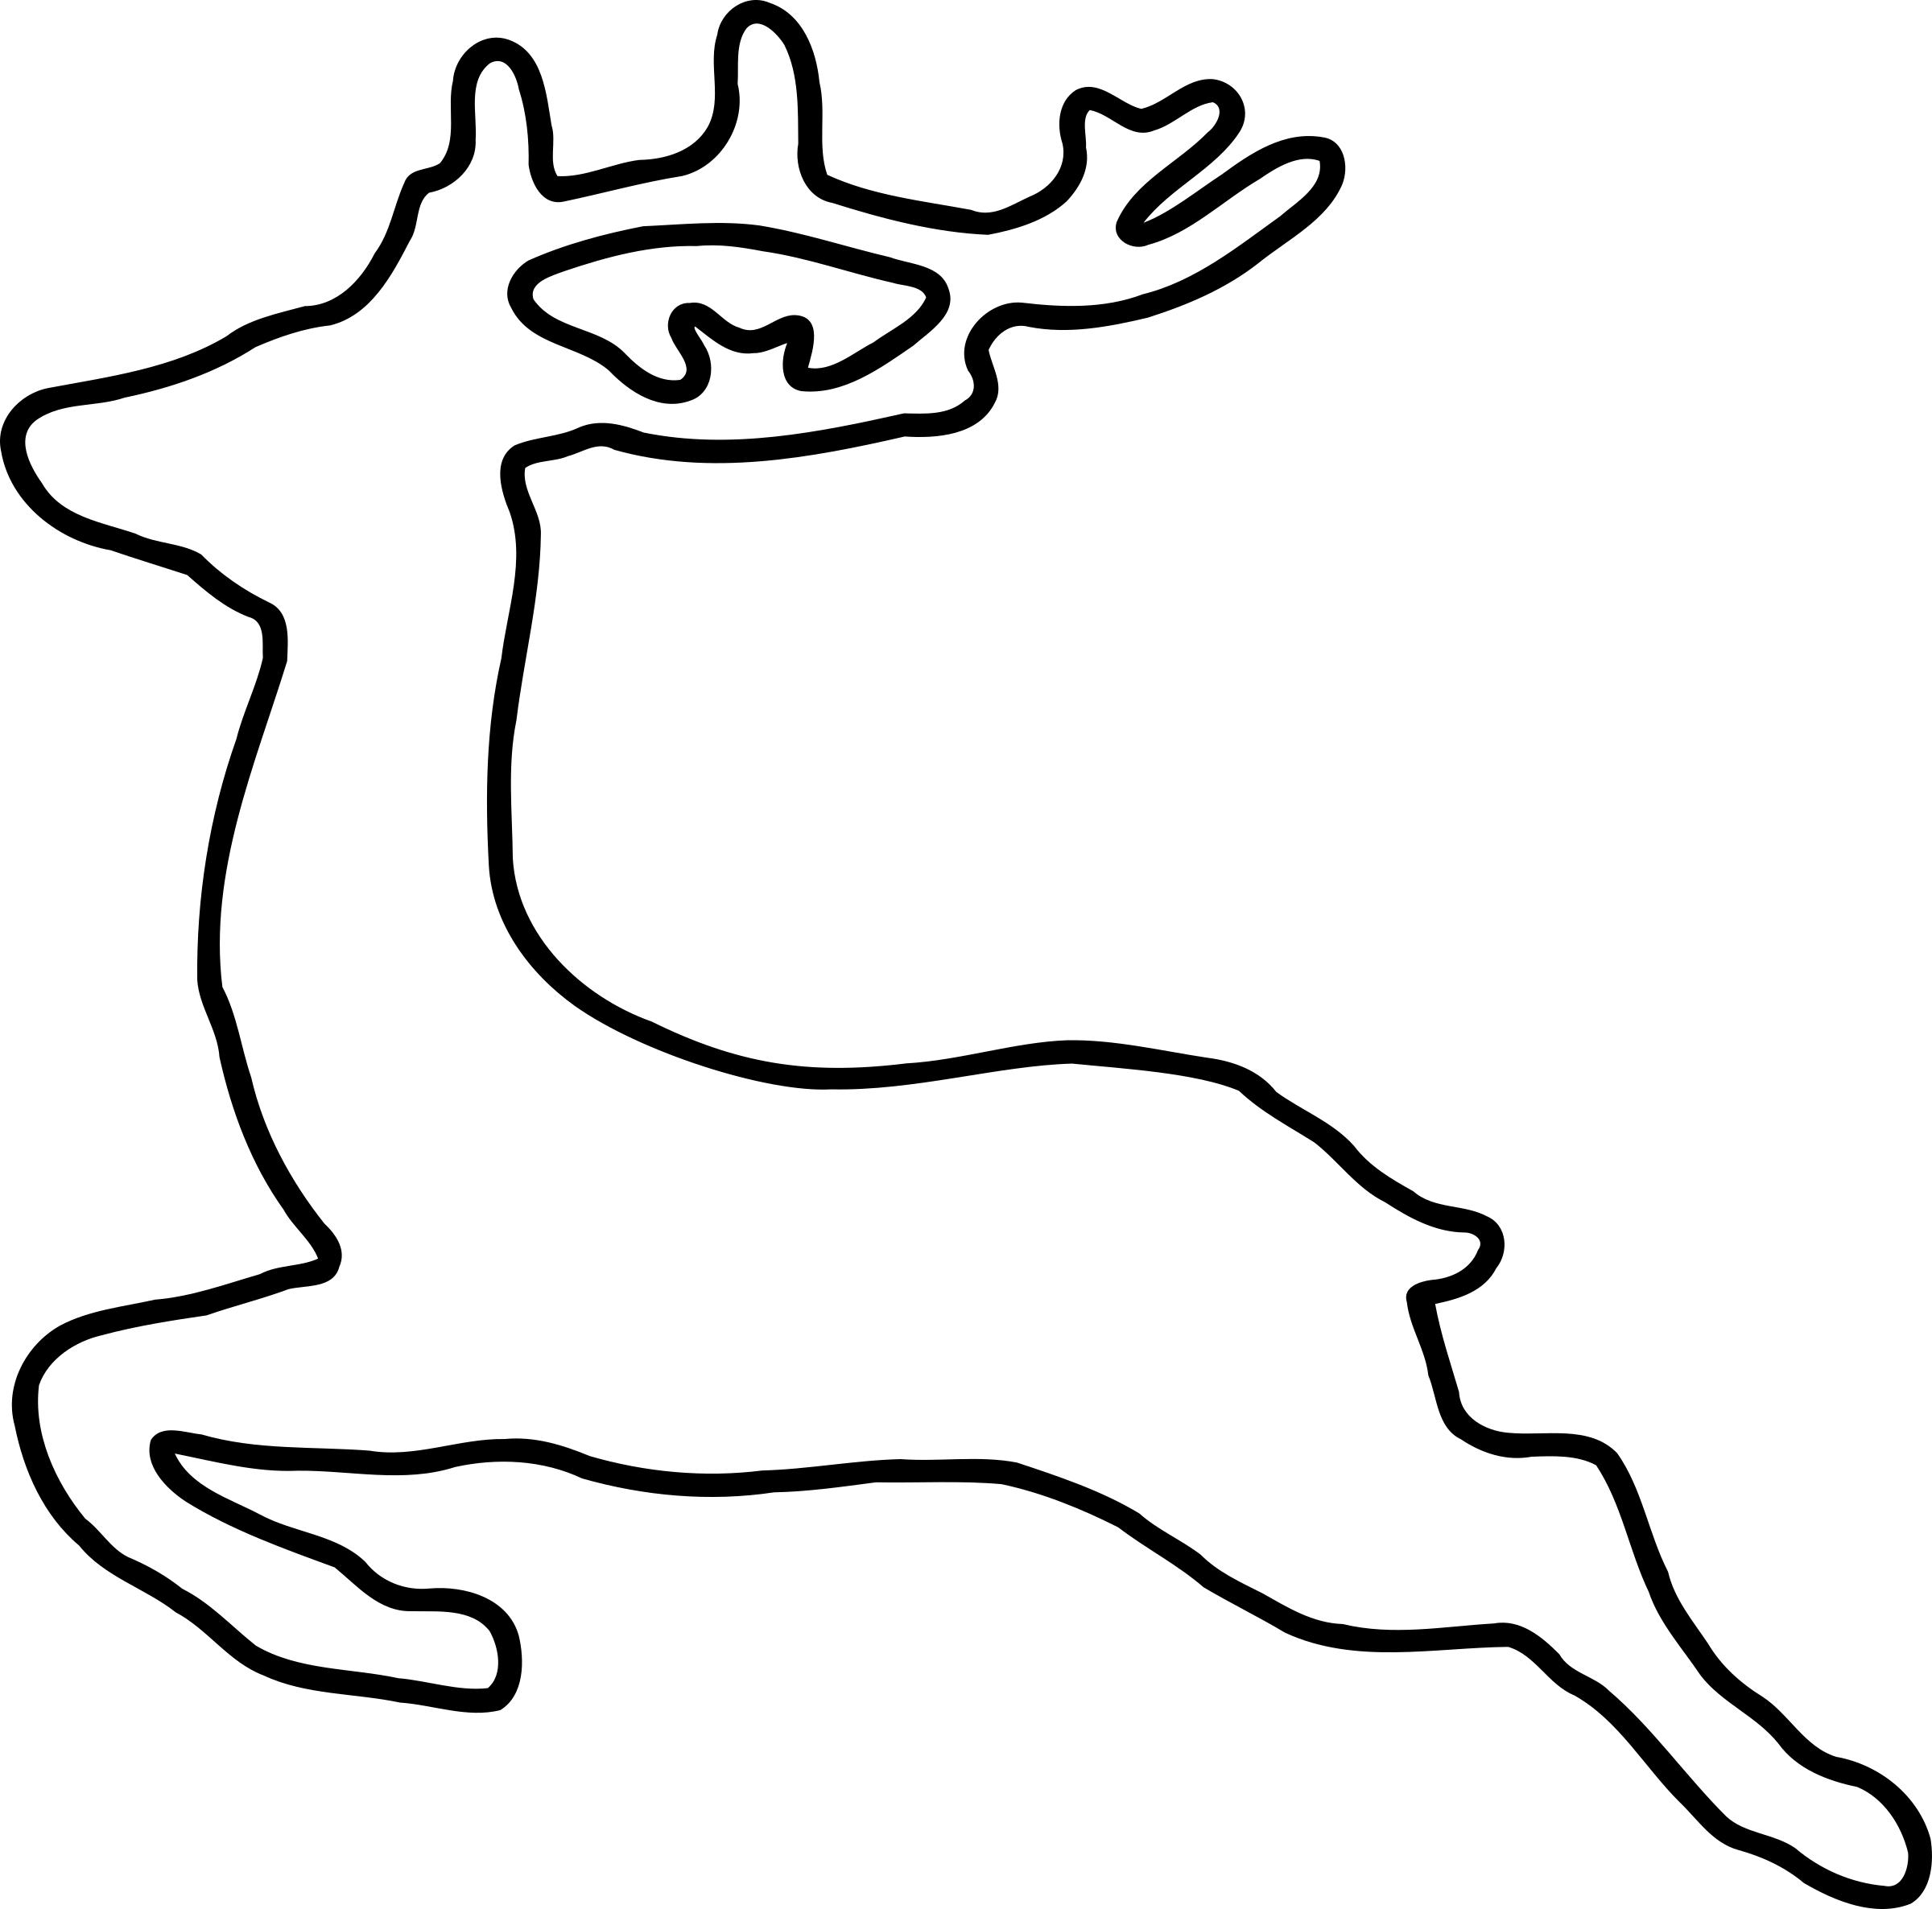 Jumping Deer Silhouette png